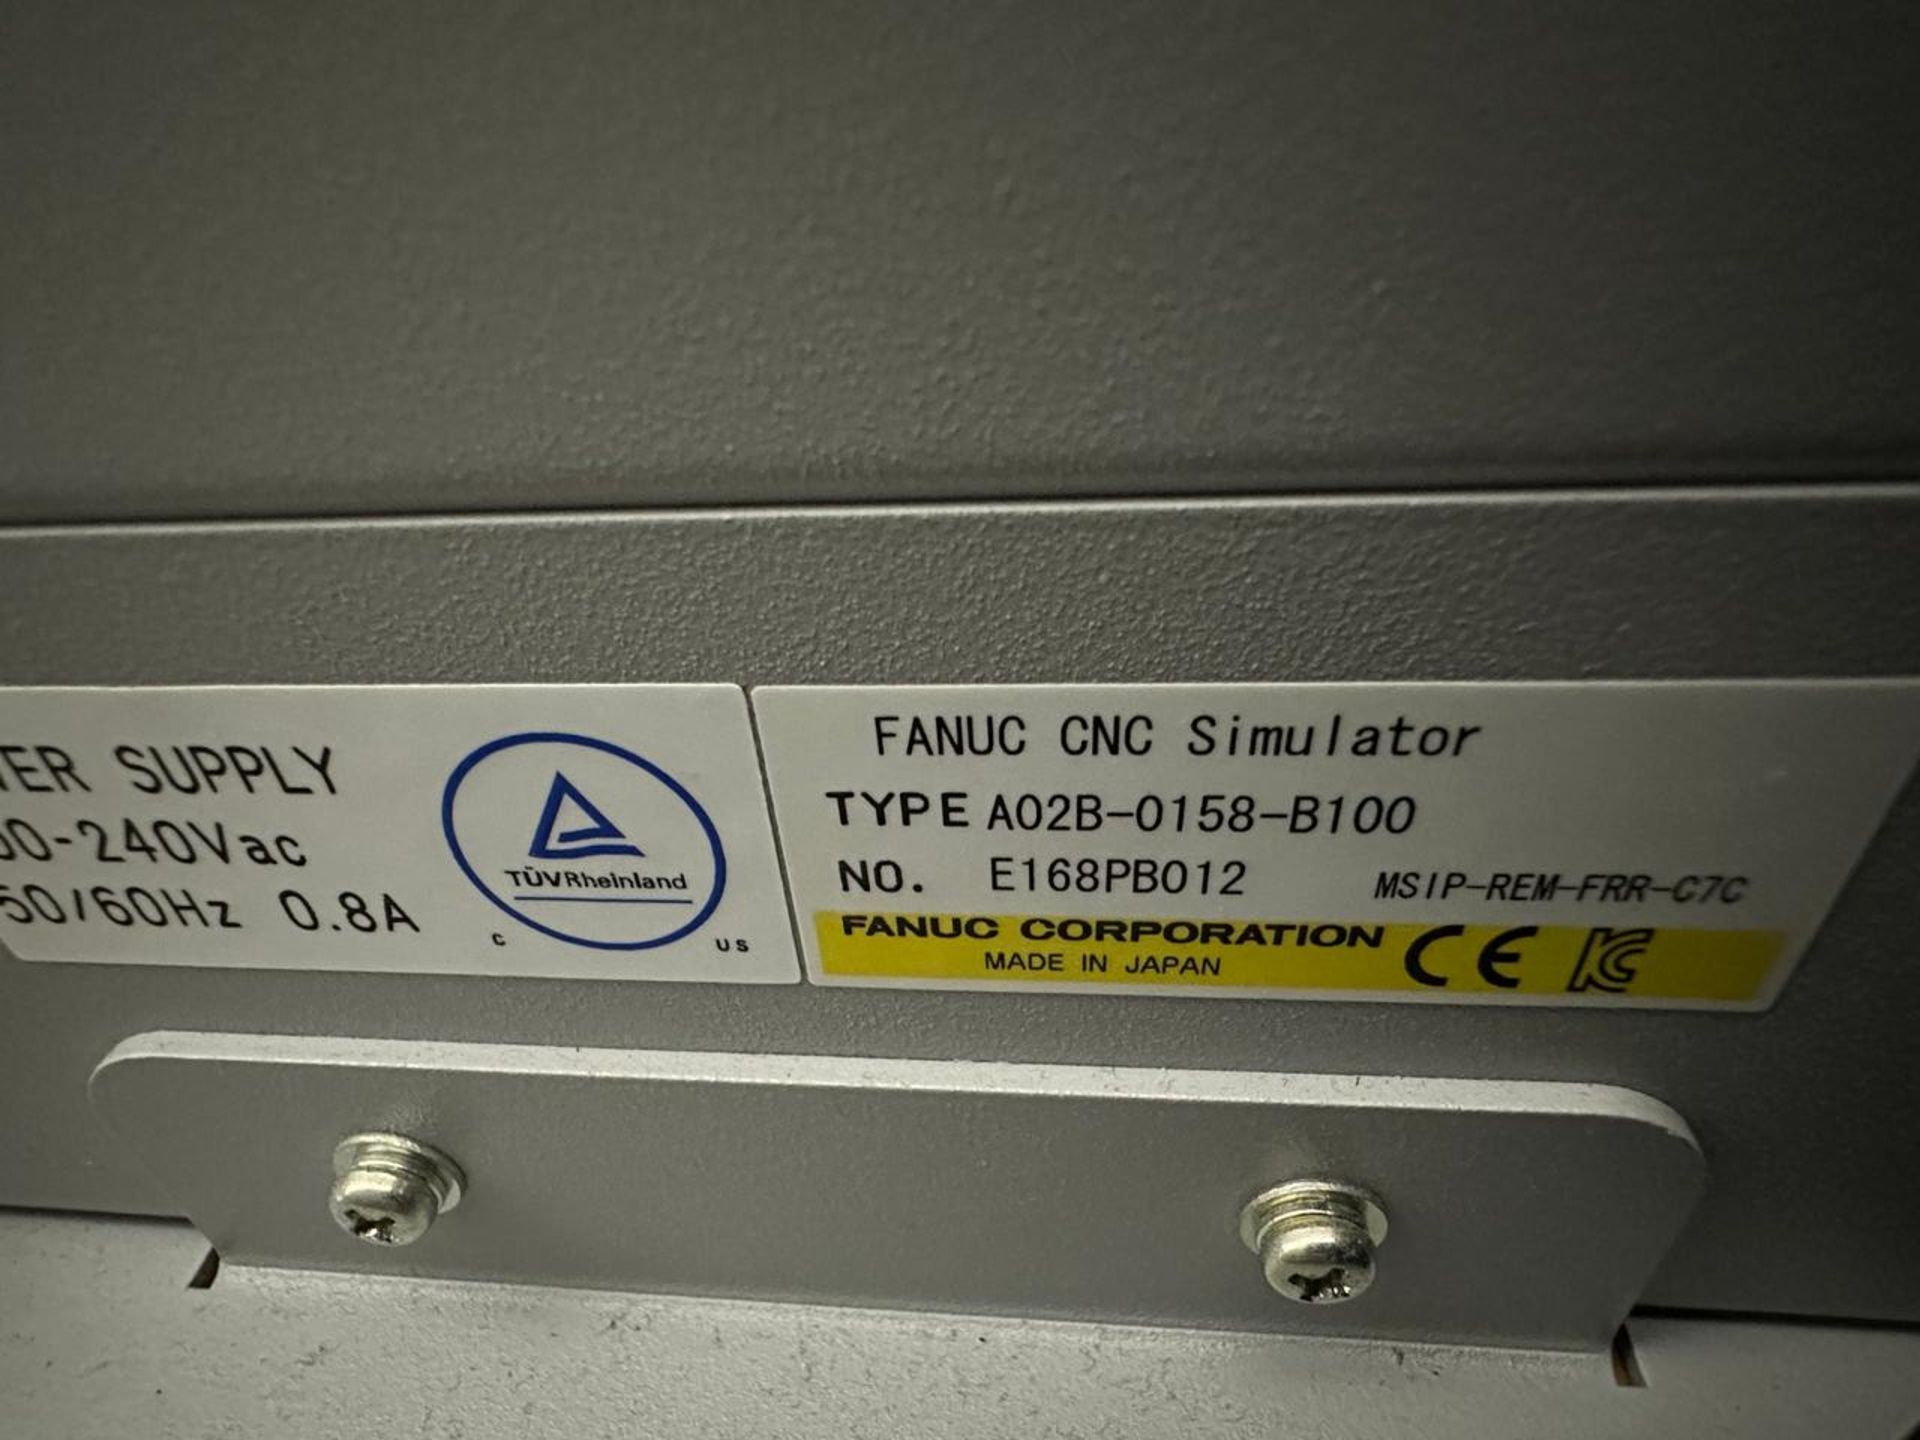 Fanuc A02B-0158-B100 (3) CNC Simulators - Image 6 of 6